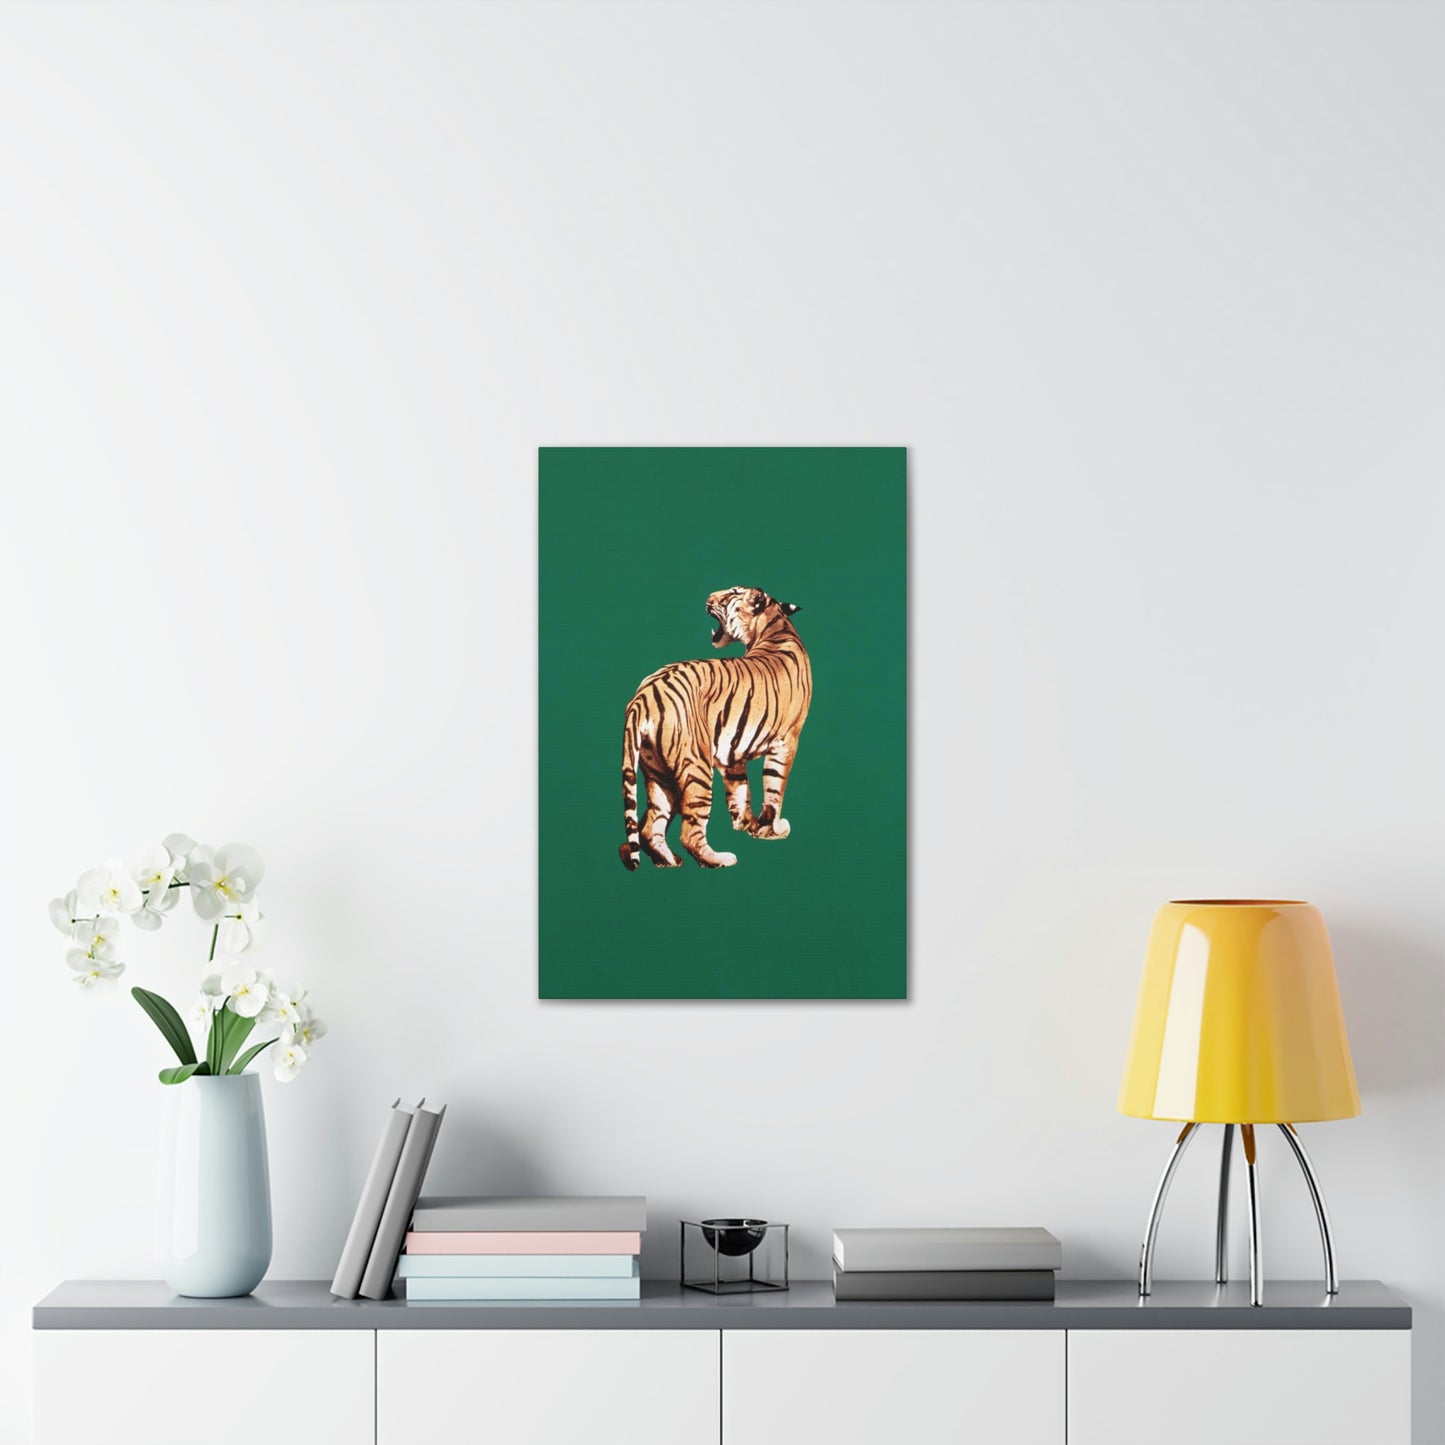 Framed Tiger